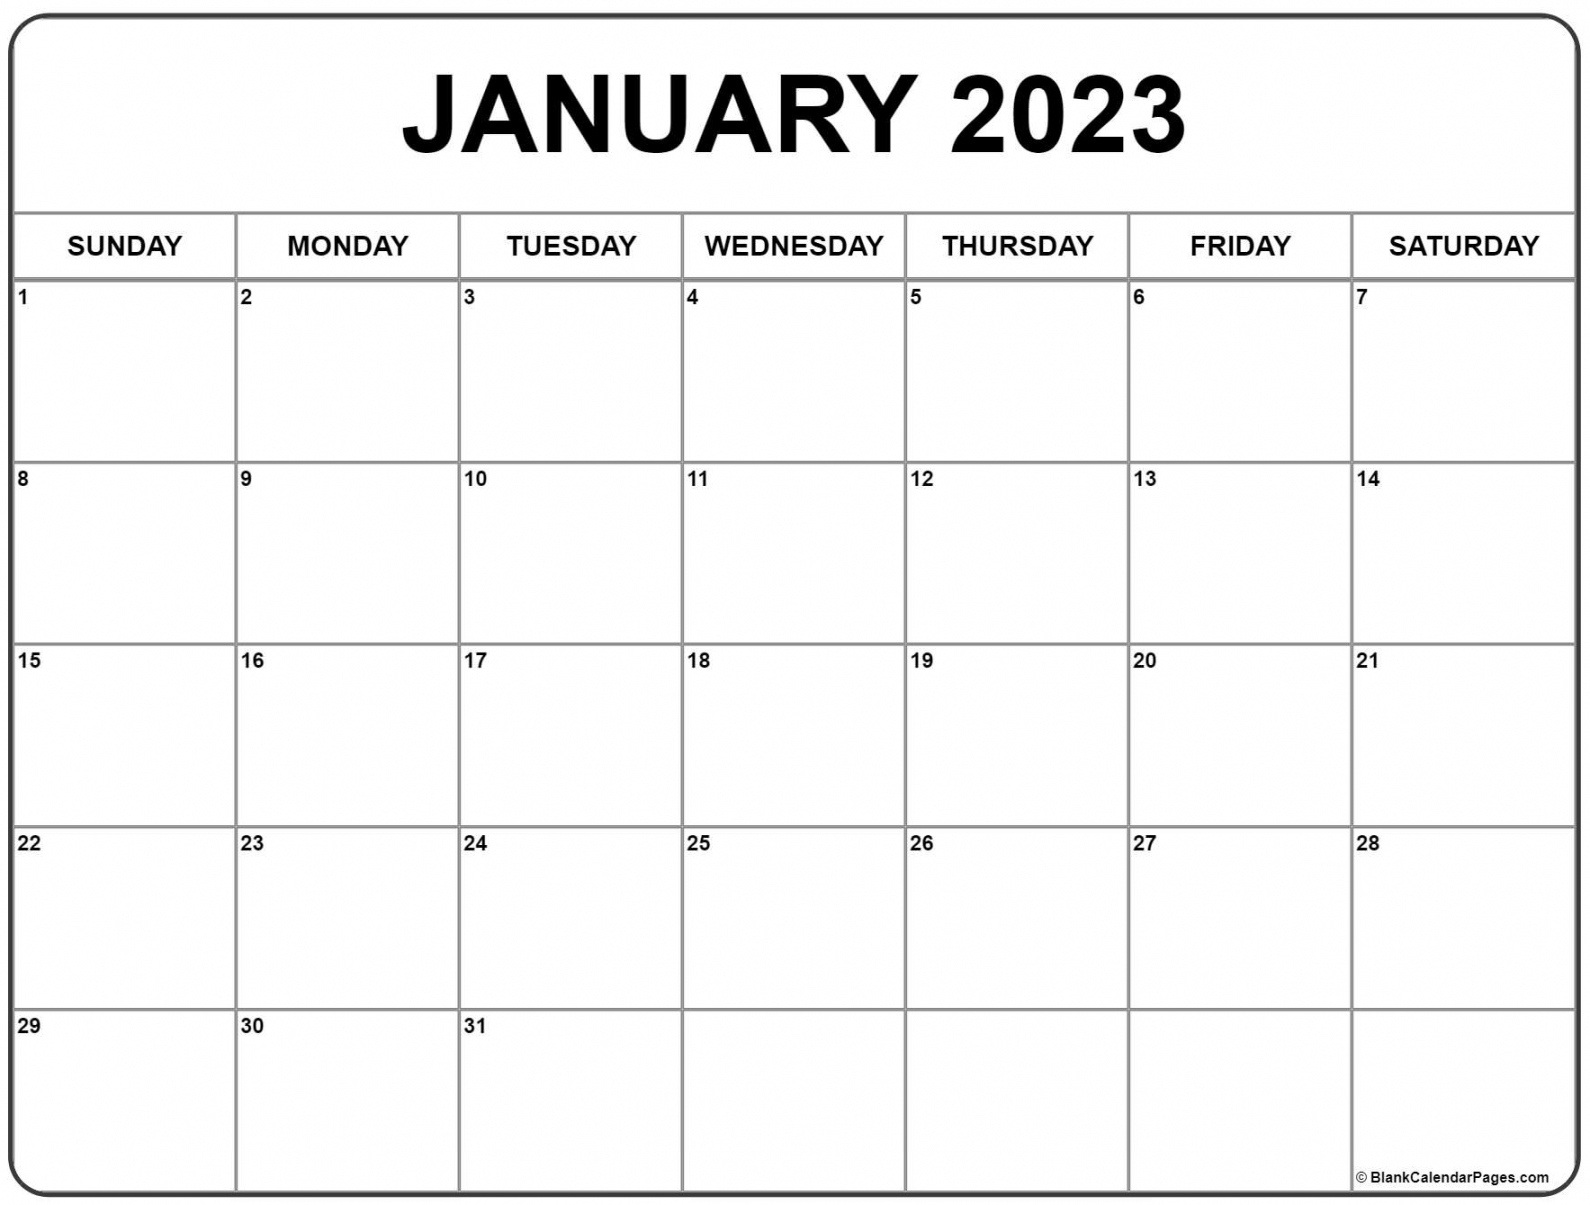 January 2023 Free Printable Calendar - Printable - January  calendar  free printable calendar